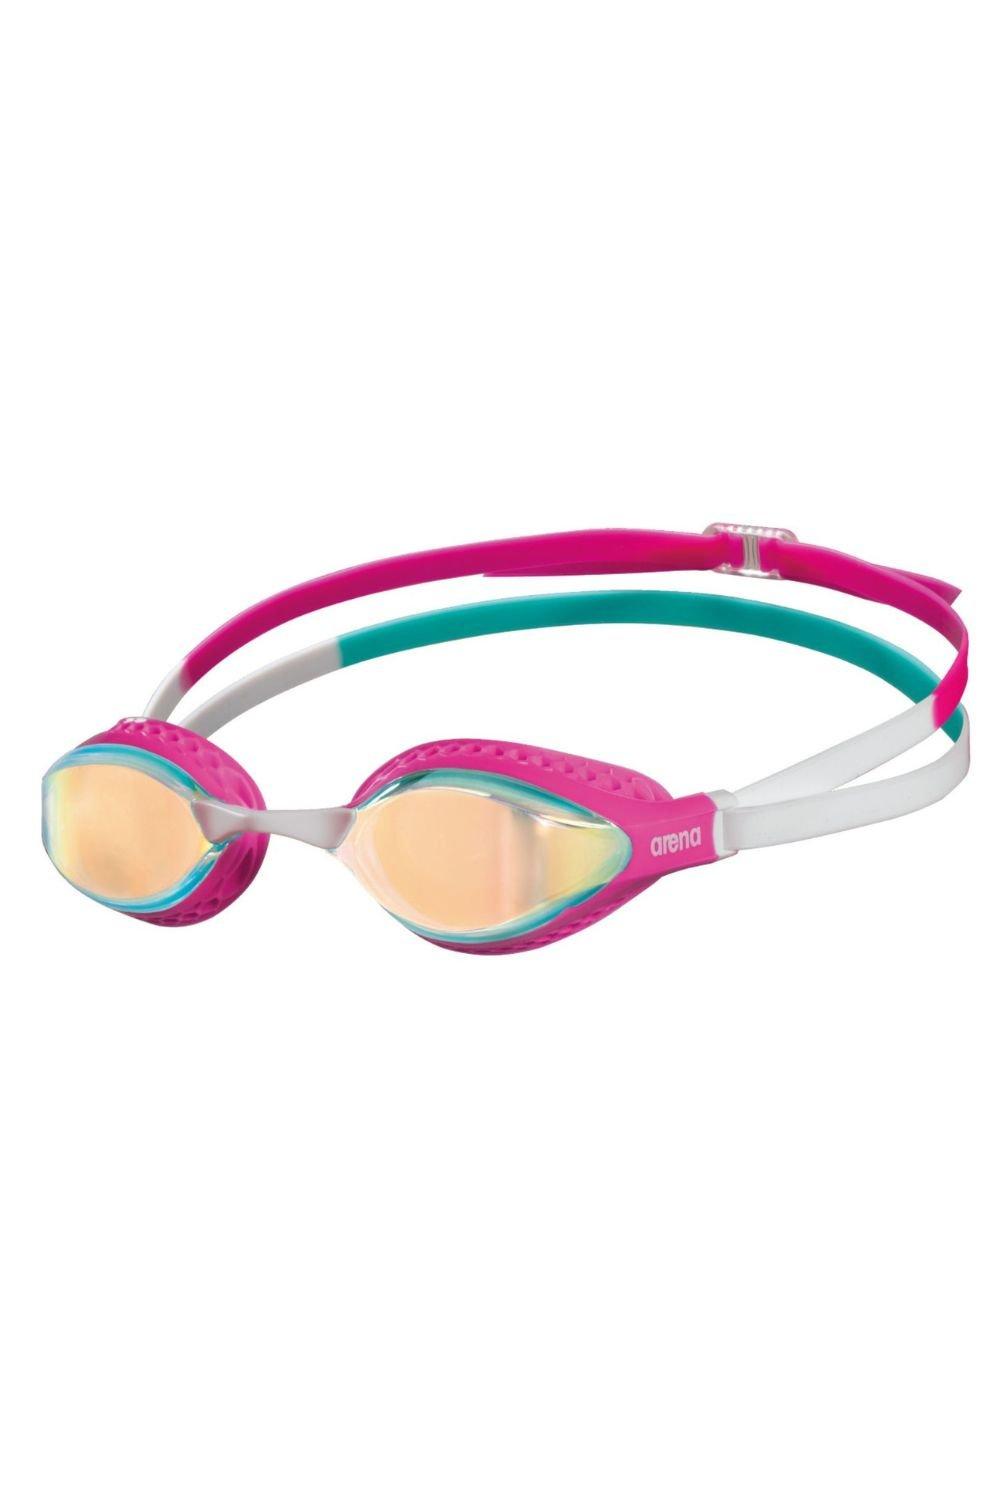 Очки для плавания с зеркалом Airspeed Arena, розовый очки для плавания детские очки для плавания прямые продажи с завода водонепроницаемые противотуманные детские силиконовые очки очки